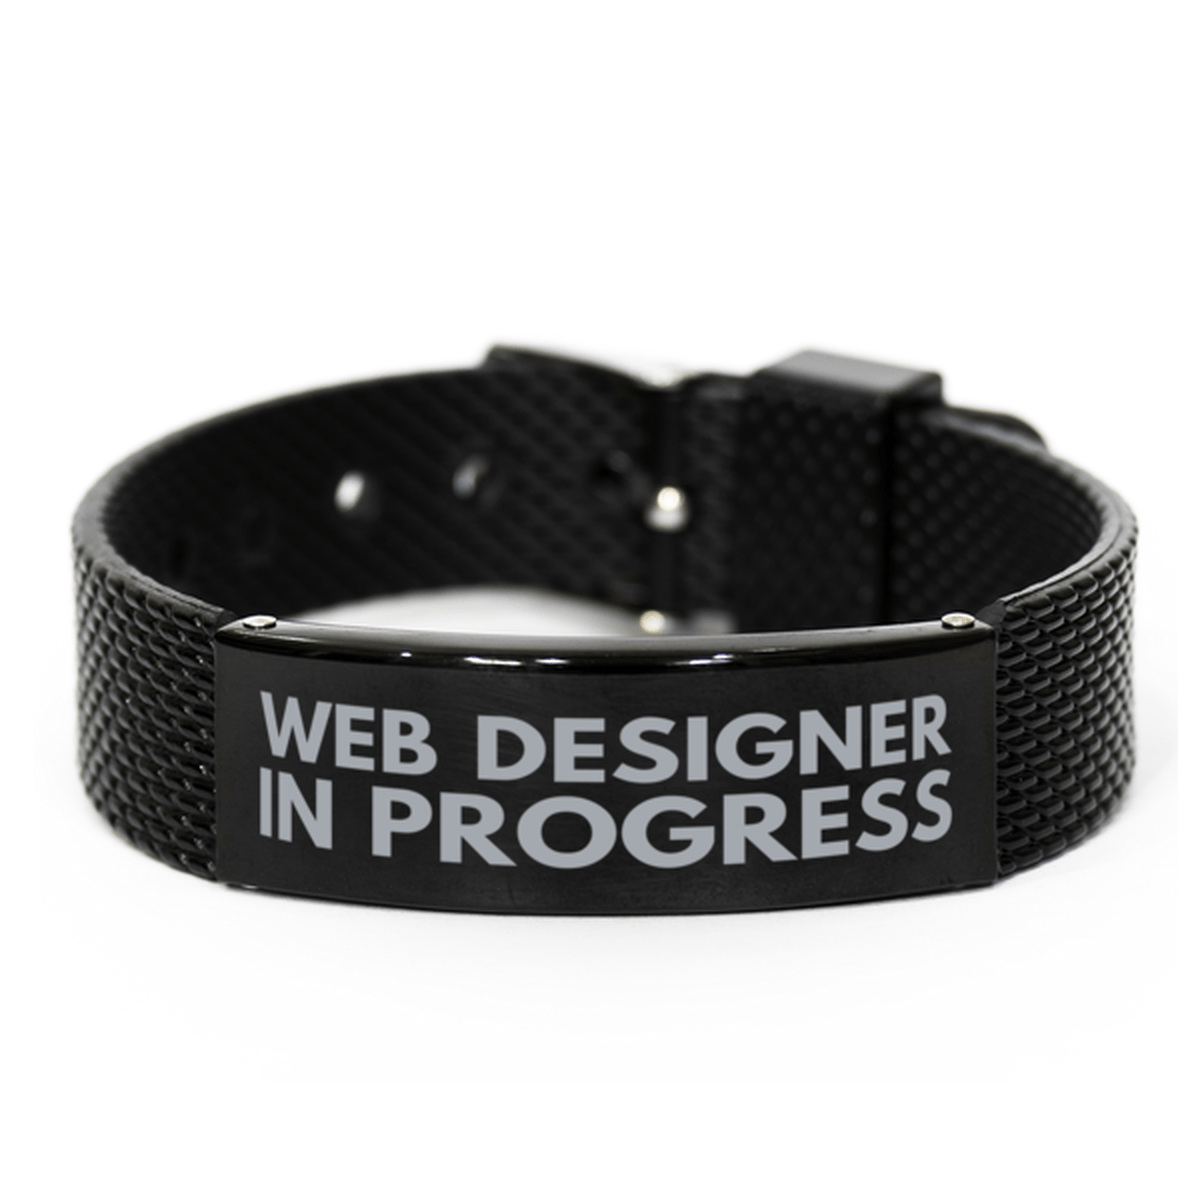 Inspirational Web Designer Black Shark Mesh Bracelet, Web Designer In Progress, Best Graduation Gifts for Students